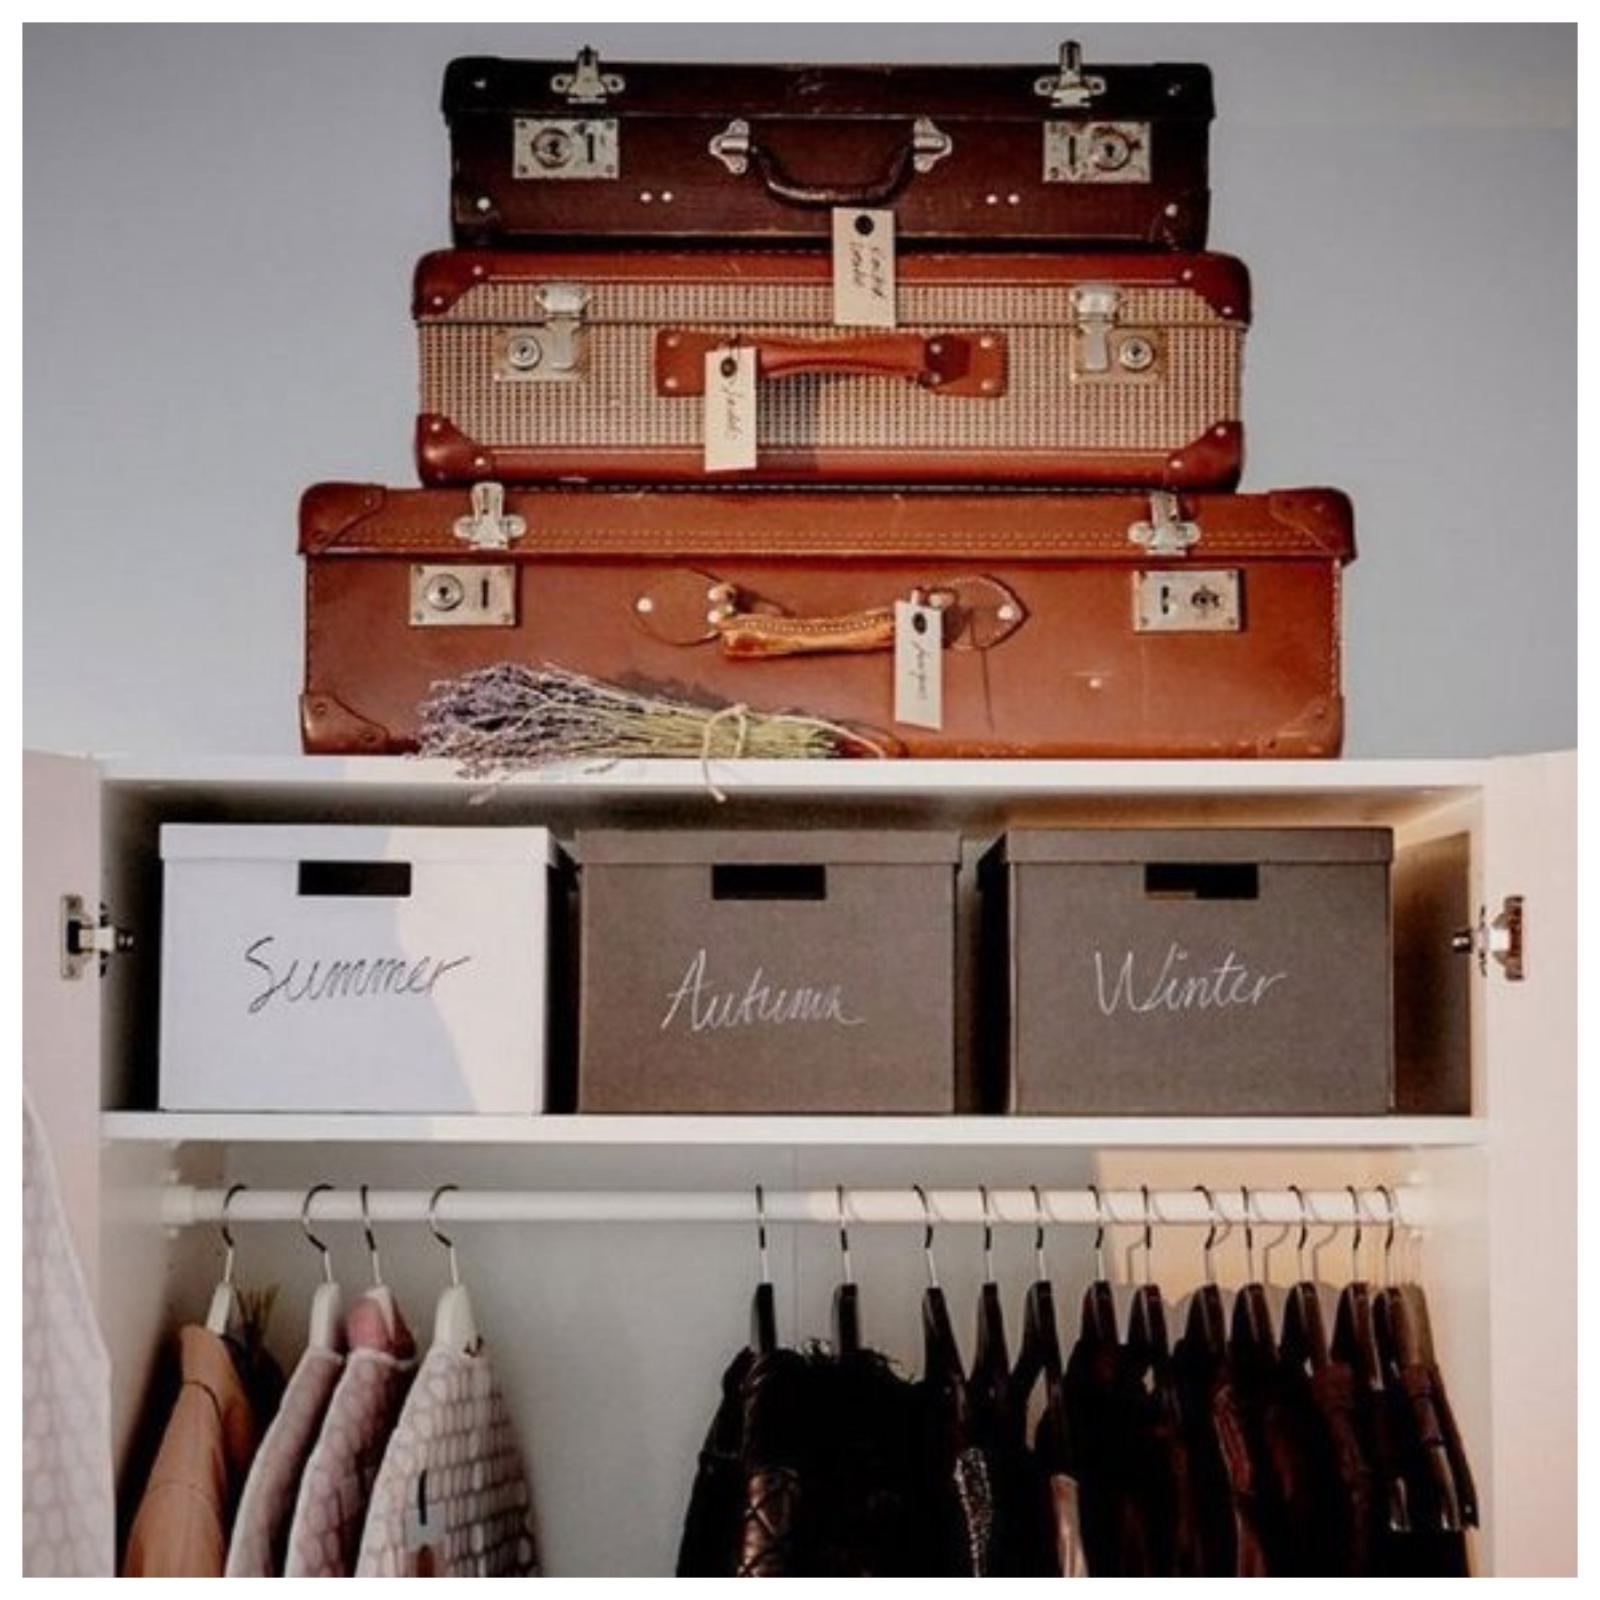 Как помочь мужу и детям организовать гардероб и приучить их к порядку